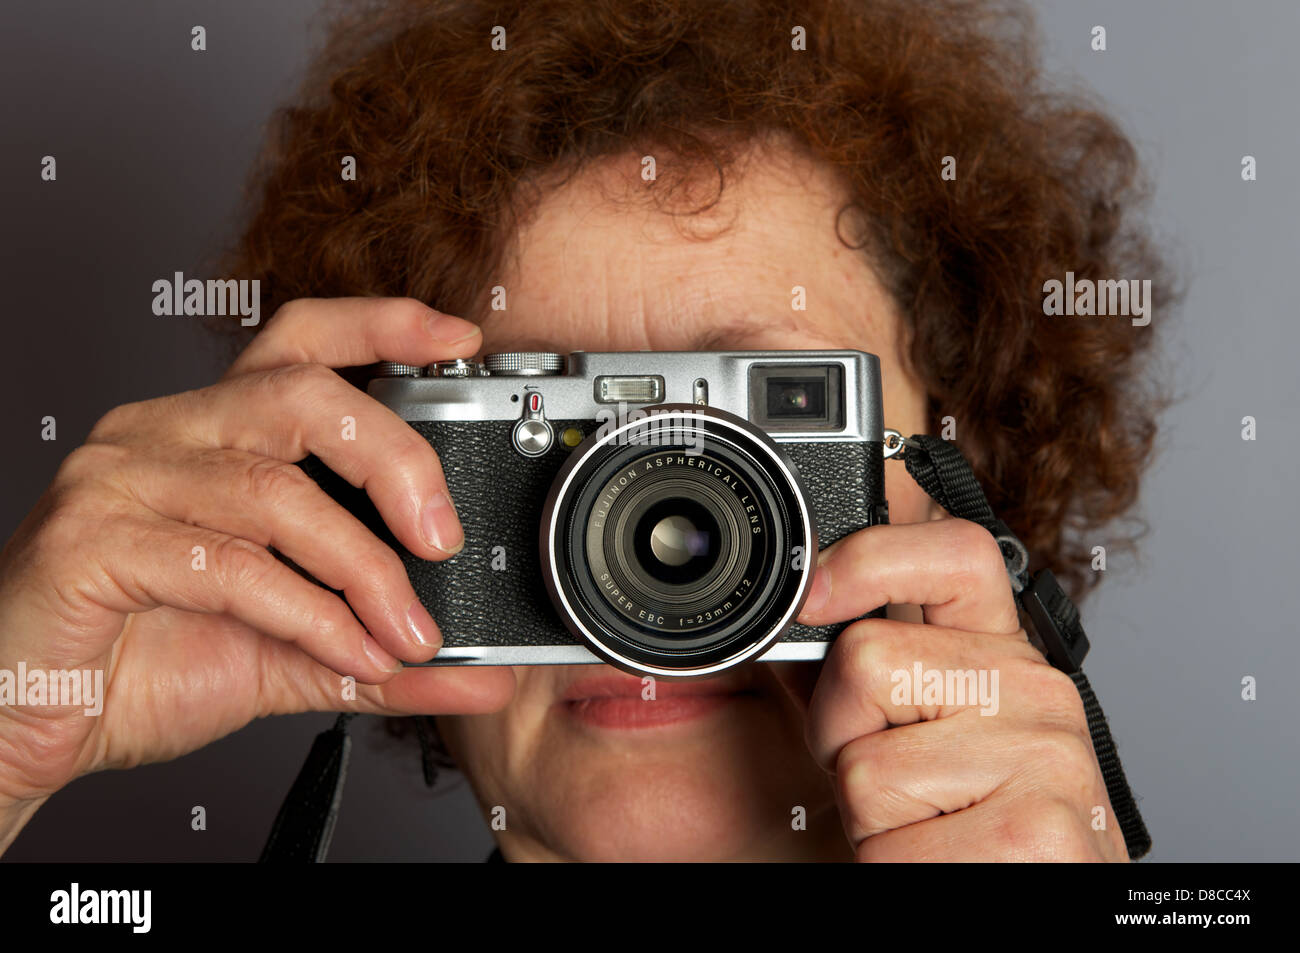 Fotografo di prendere foto con una Fuji X100 fotocamera digitale compatta Foto Stock